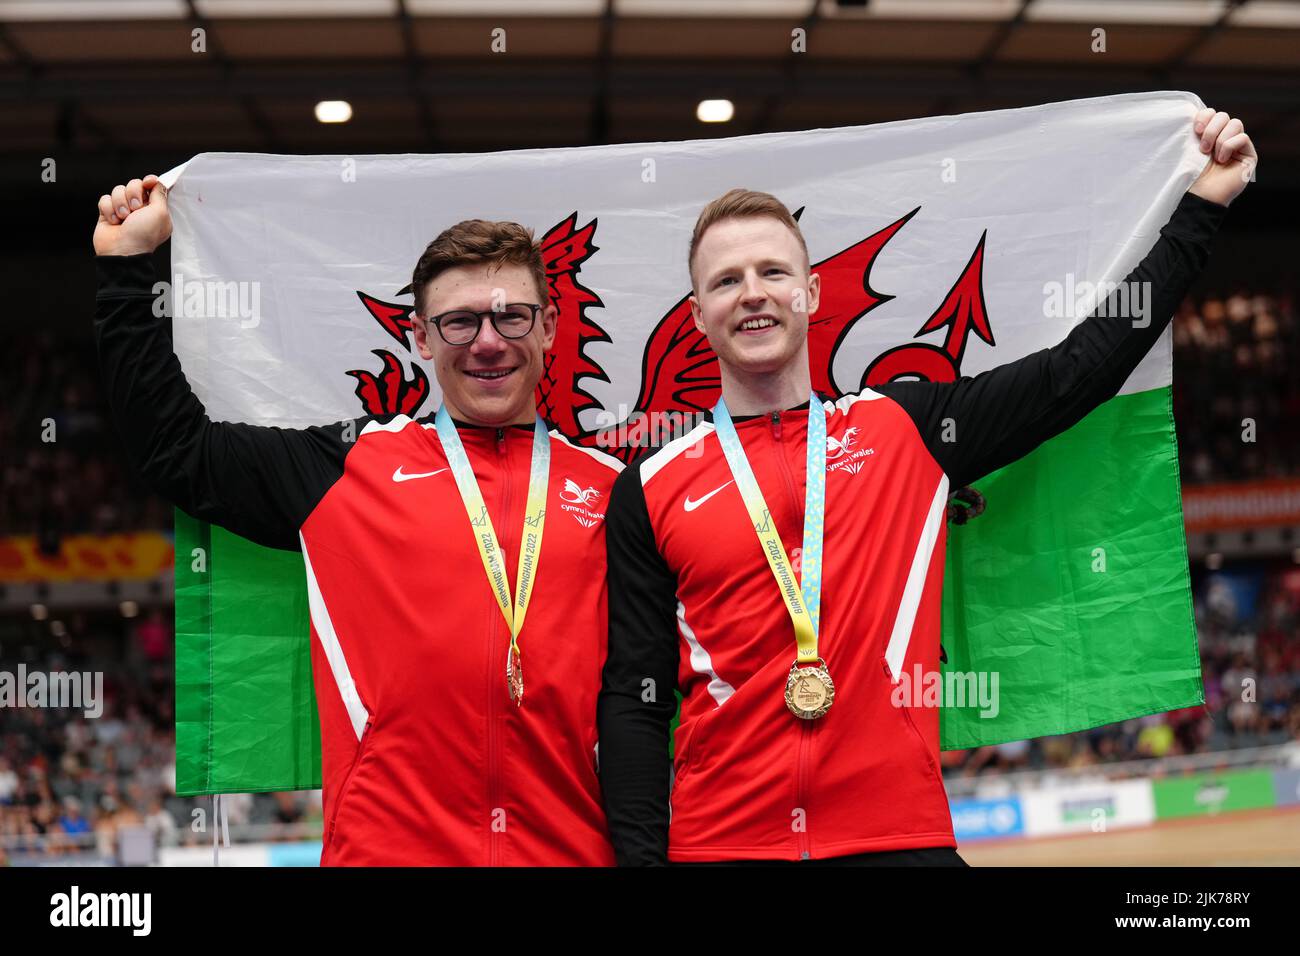 Wales’ James Ball und Matthew Rotherham mit ihren Goldmedaillen nach dem Männer Tandem B Sprint im Lee Valley VeloPark am dritten Tag der Commonwealth Games 2022 in London. Bilddatum: Sonntag, 31. Juli 2022. Stockfoto